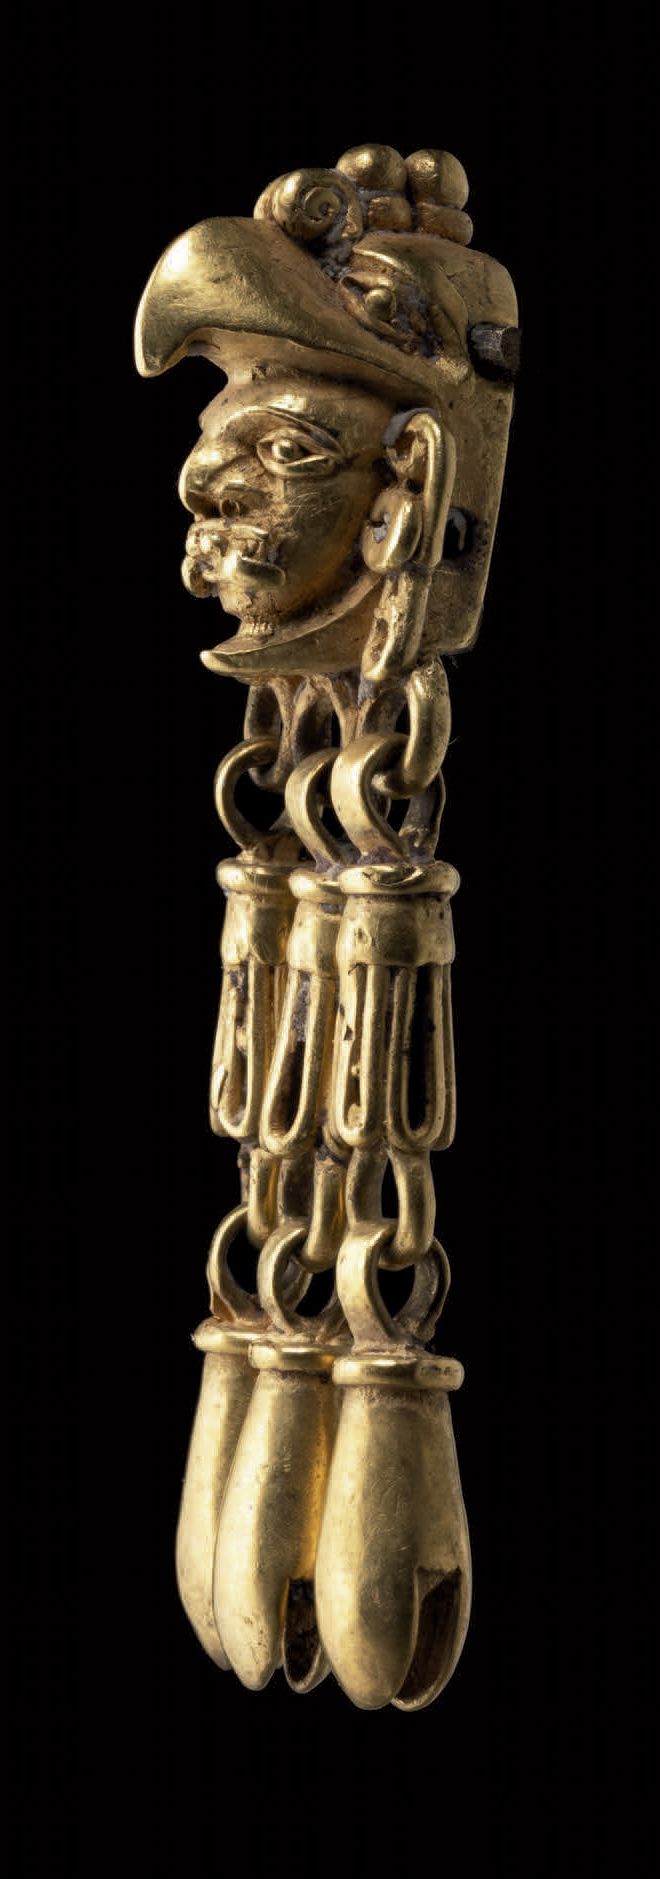 Null 吊坠-带铃铛的鹰战士头像 墨西哥阿兹特克时期的米斯特克文化
后古典时代，公元1300-1521年
考古金
重量6.87克
高4.7厘米
墨西哥米斯特克&hellip;